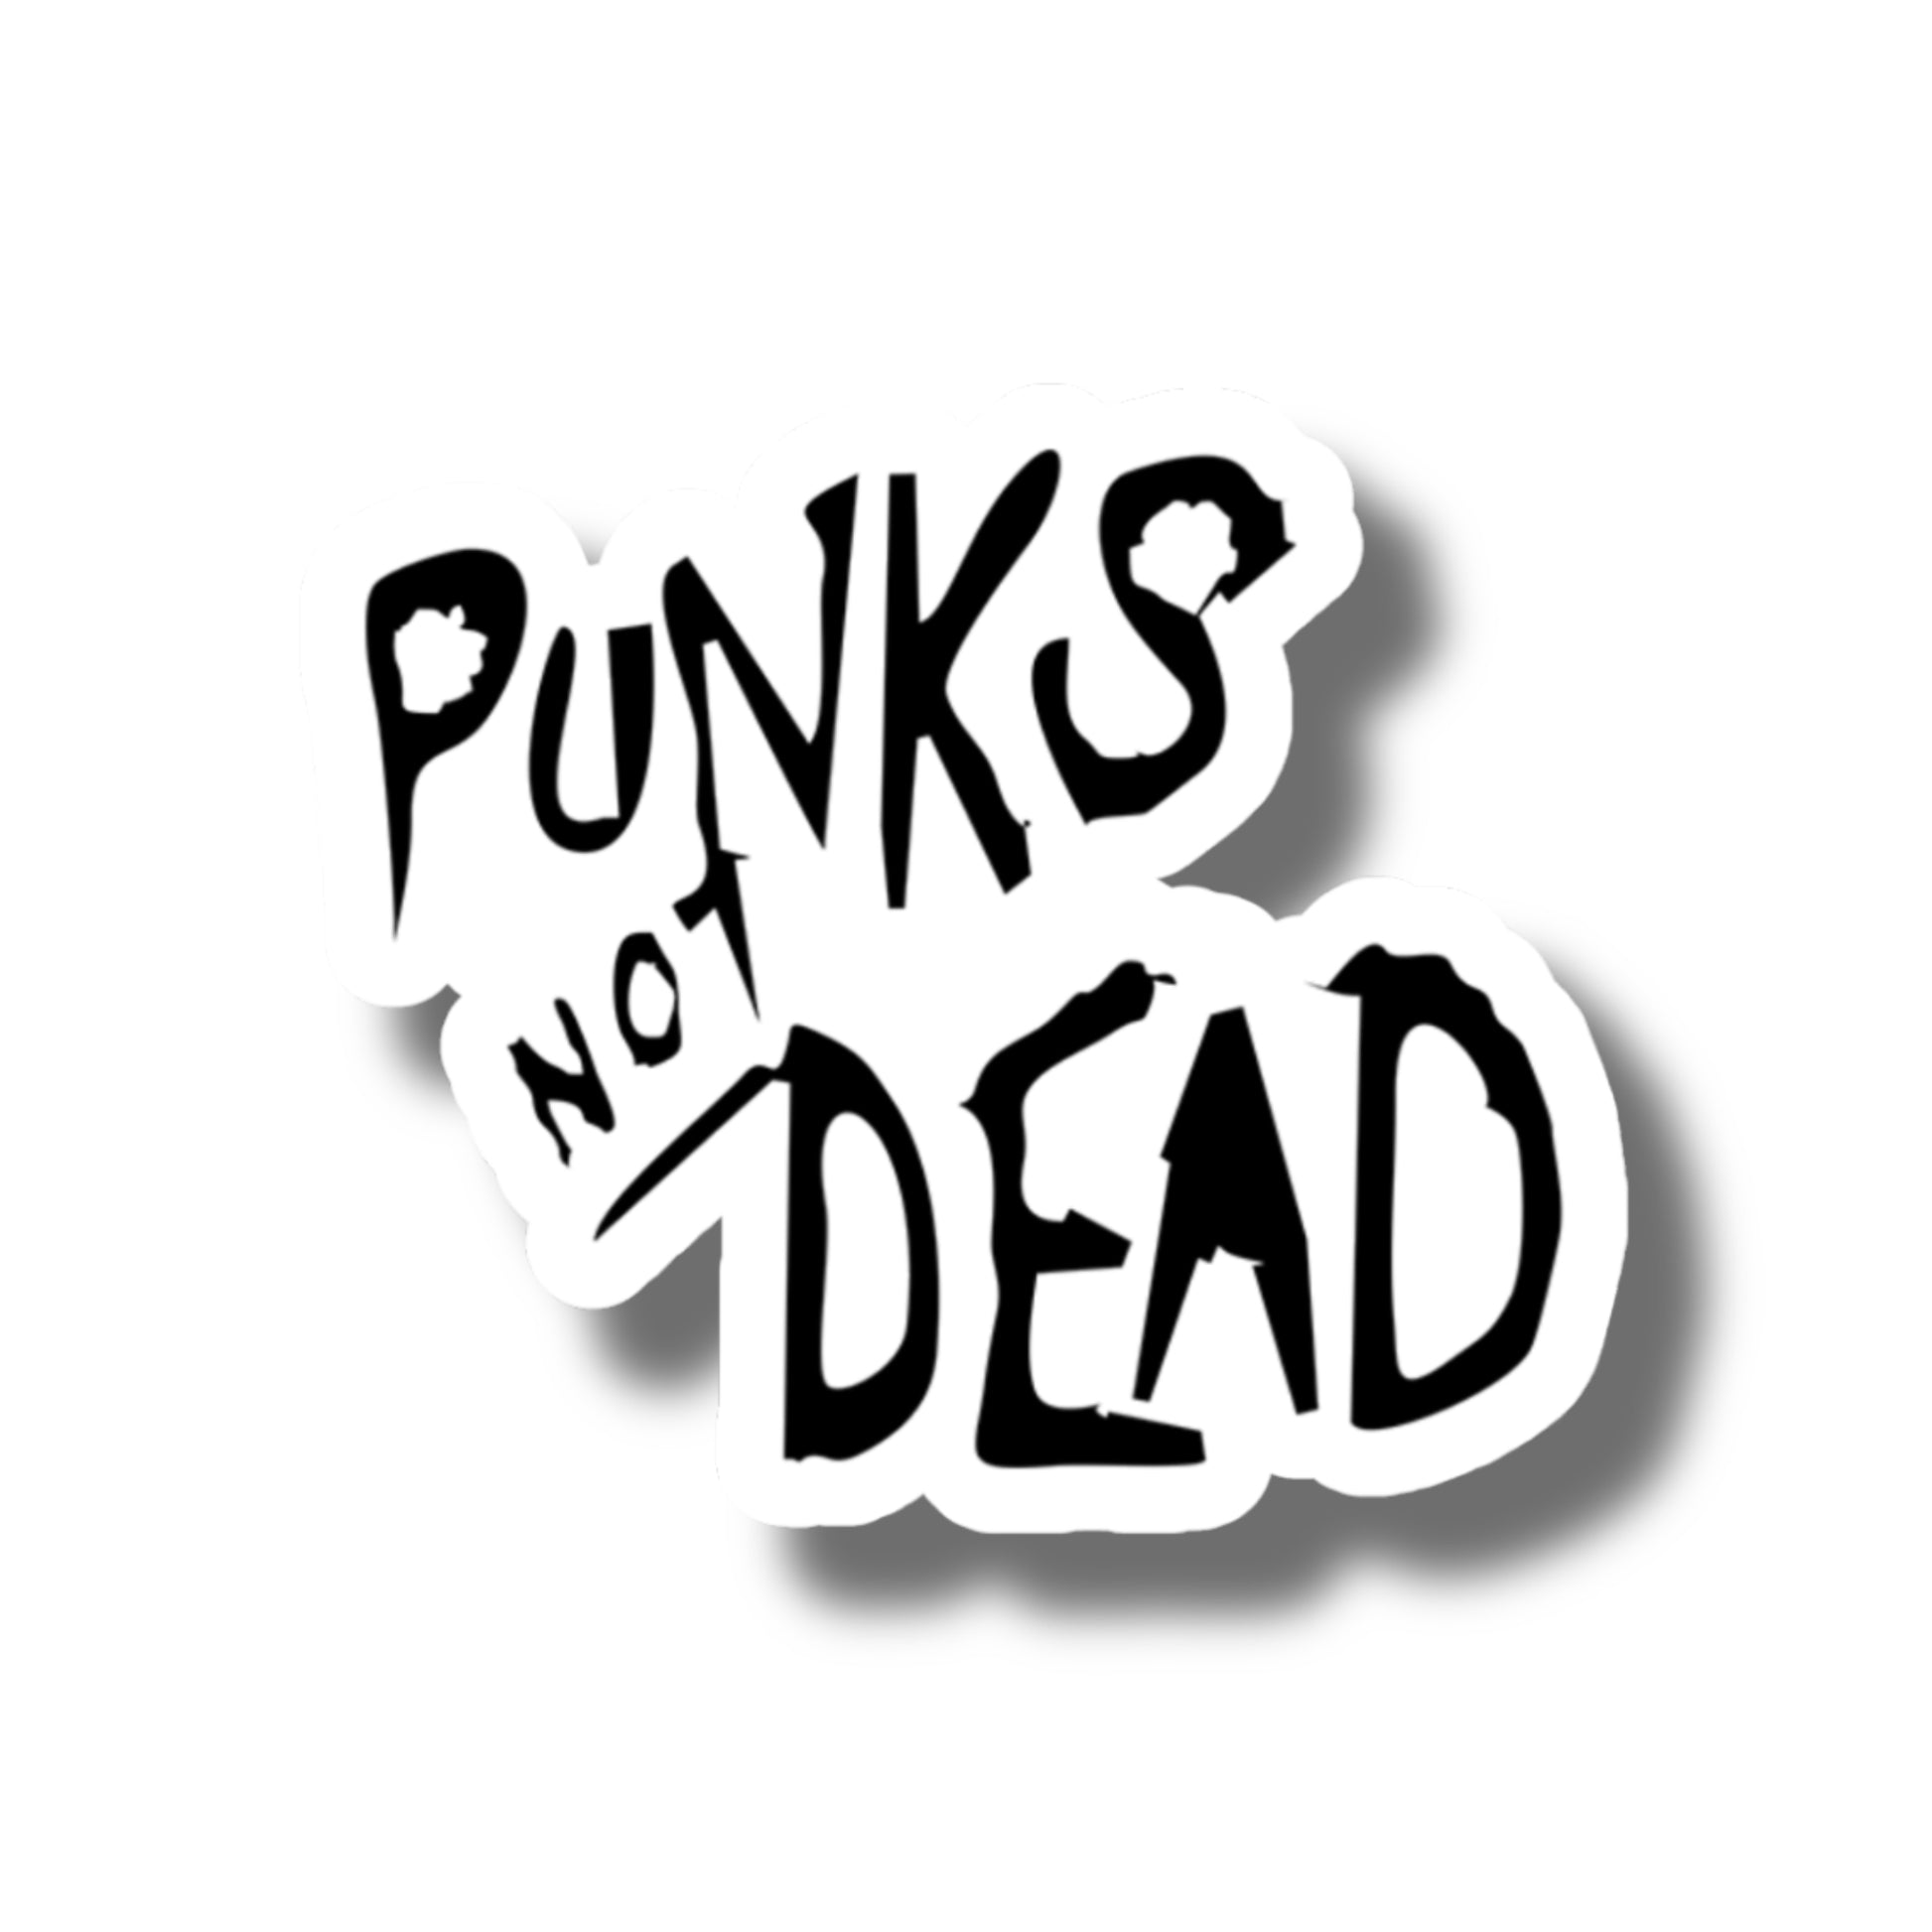 Punks Not Dead Sticker- Water Bottle Sticker, Skateboard Sticker, Laptop Decal - Brandi Renee Studio